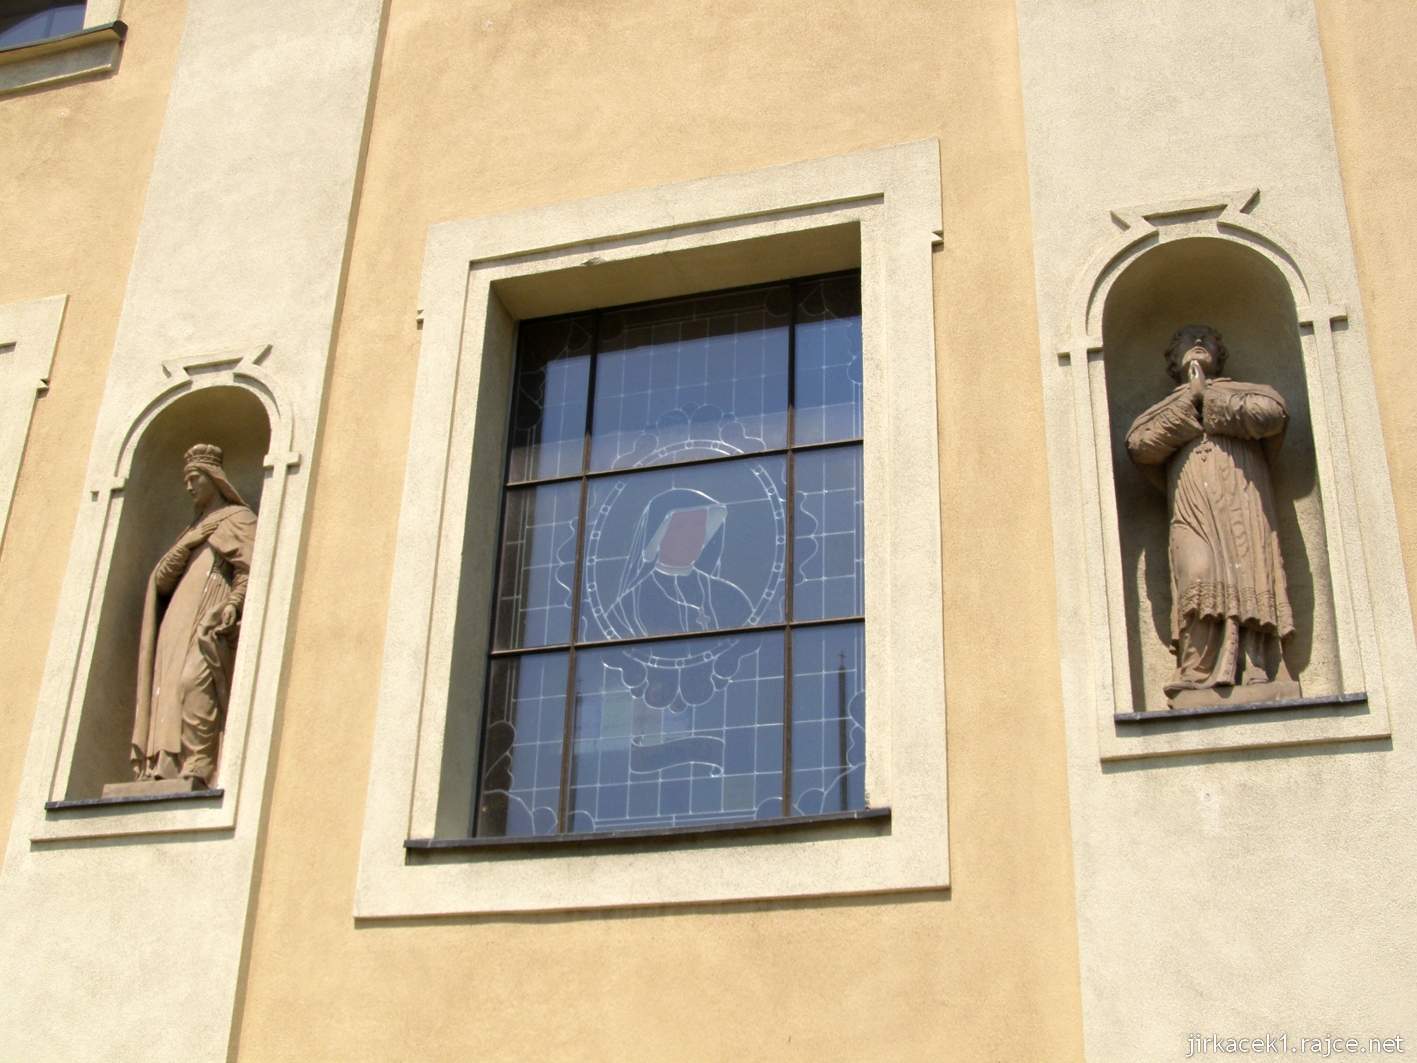 Tworków - kostel sv. Petra a Pavla (Kościół Św. Piotra i Pawła w Tworkowie) - vitrážové okno, po stranách sochy svatých v nikách